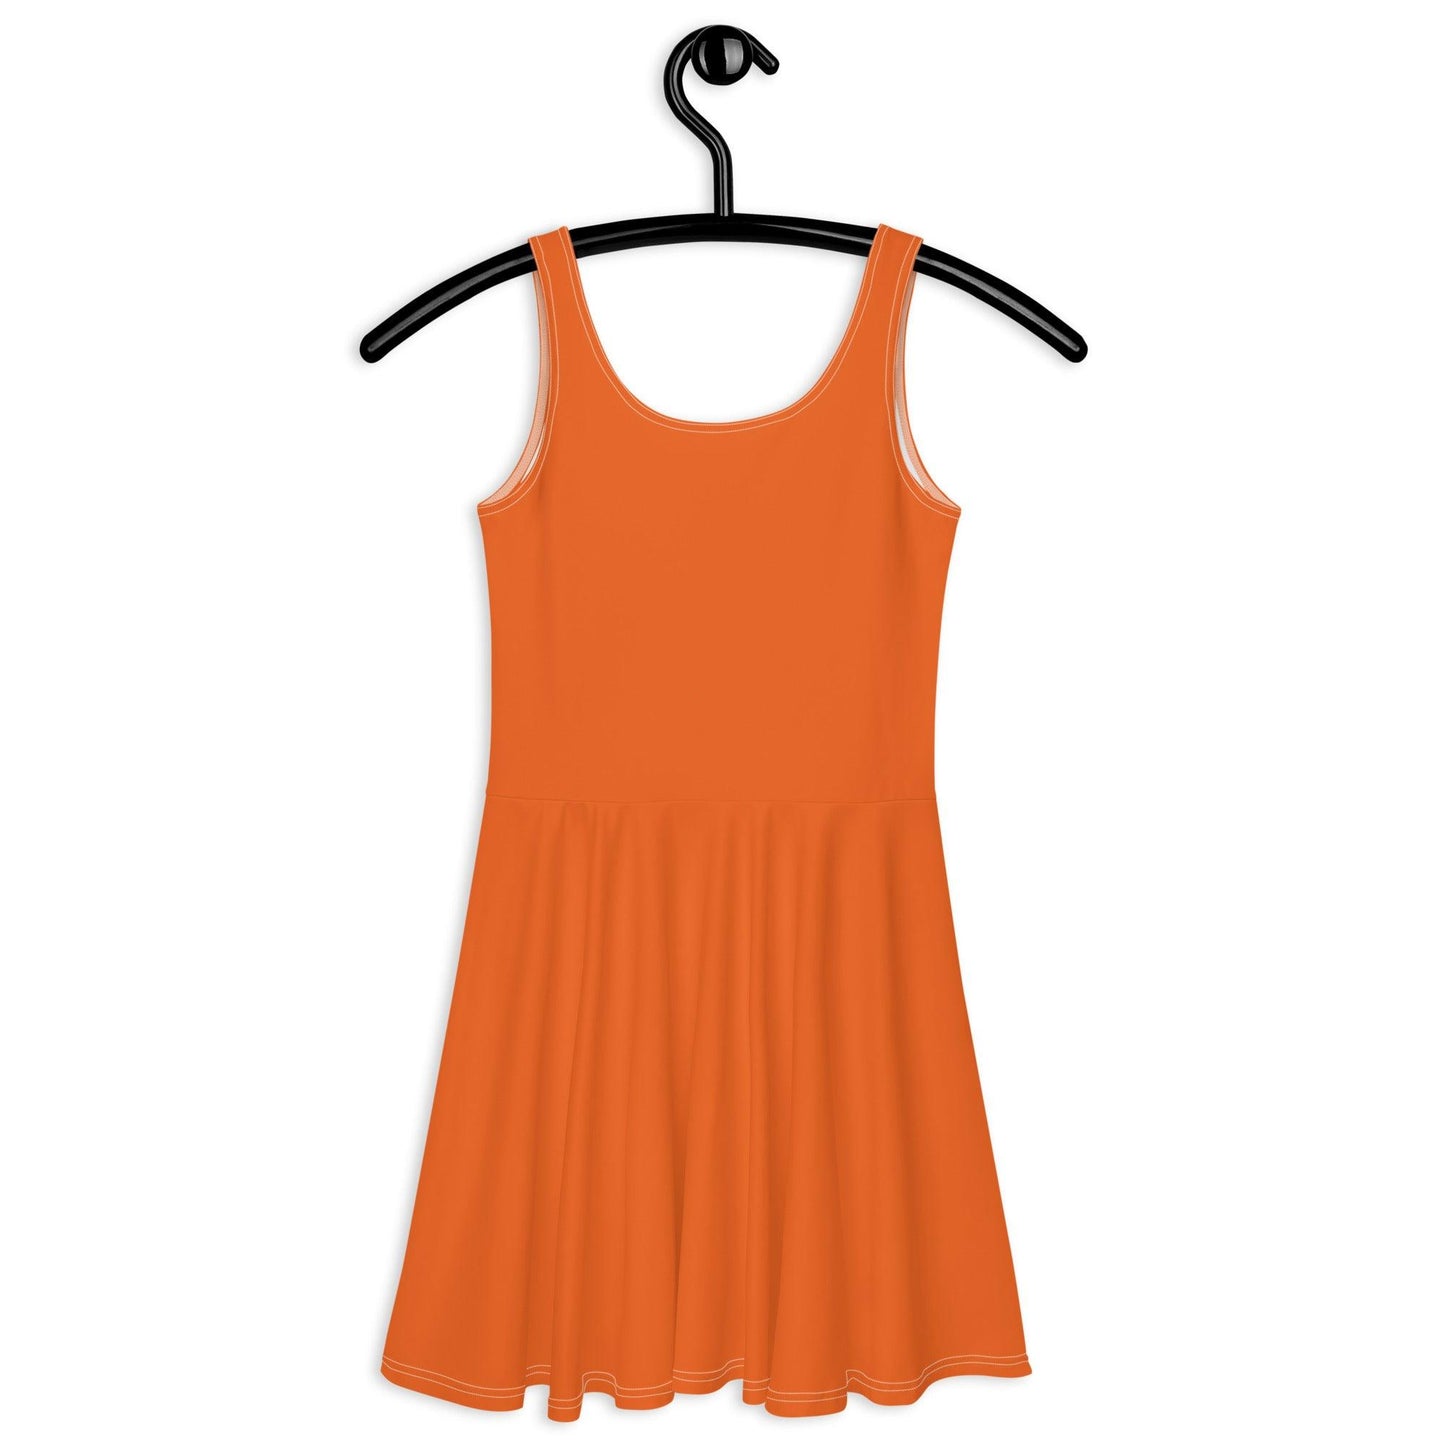 Oranje EK Voetbal Jurkje - DutchDress Bavaria stijl - Vrouwelijke pasvorm